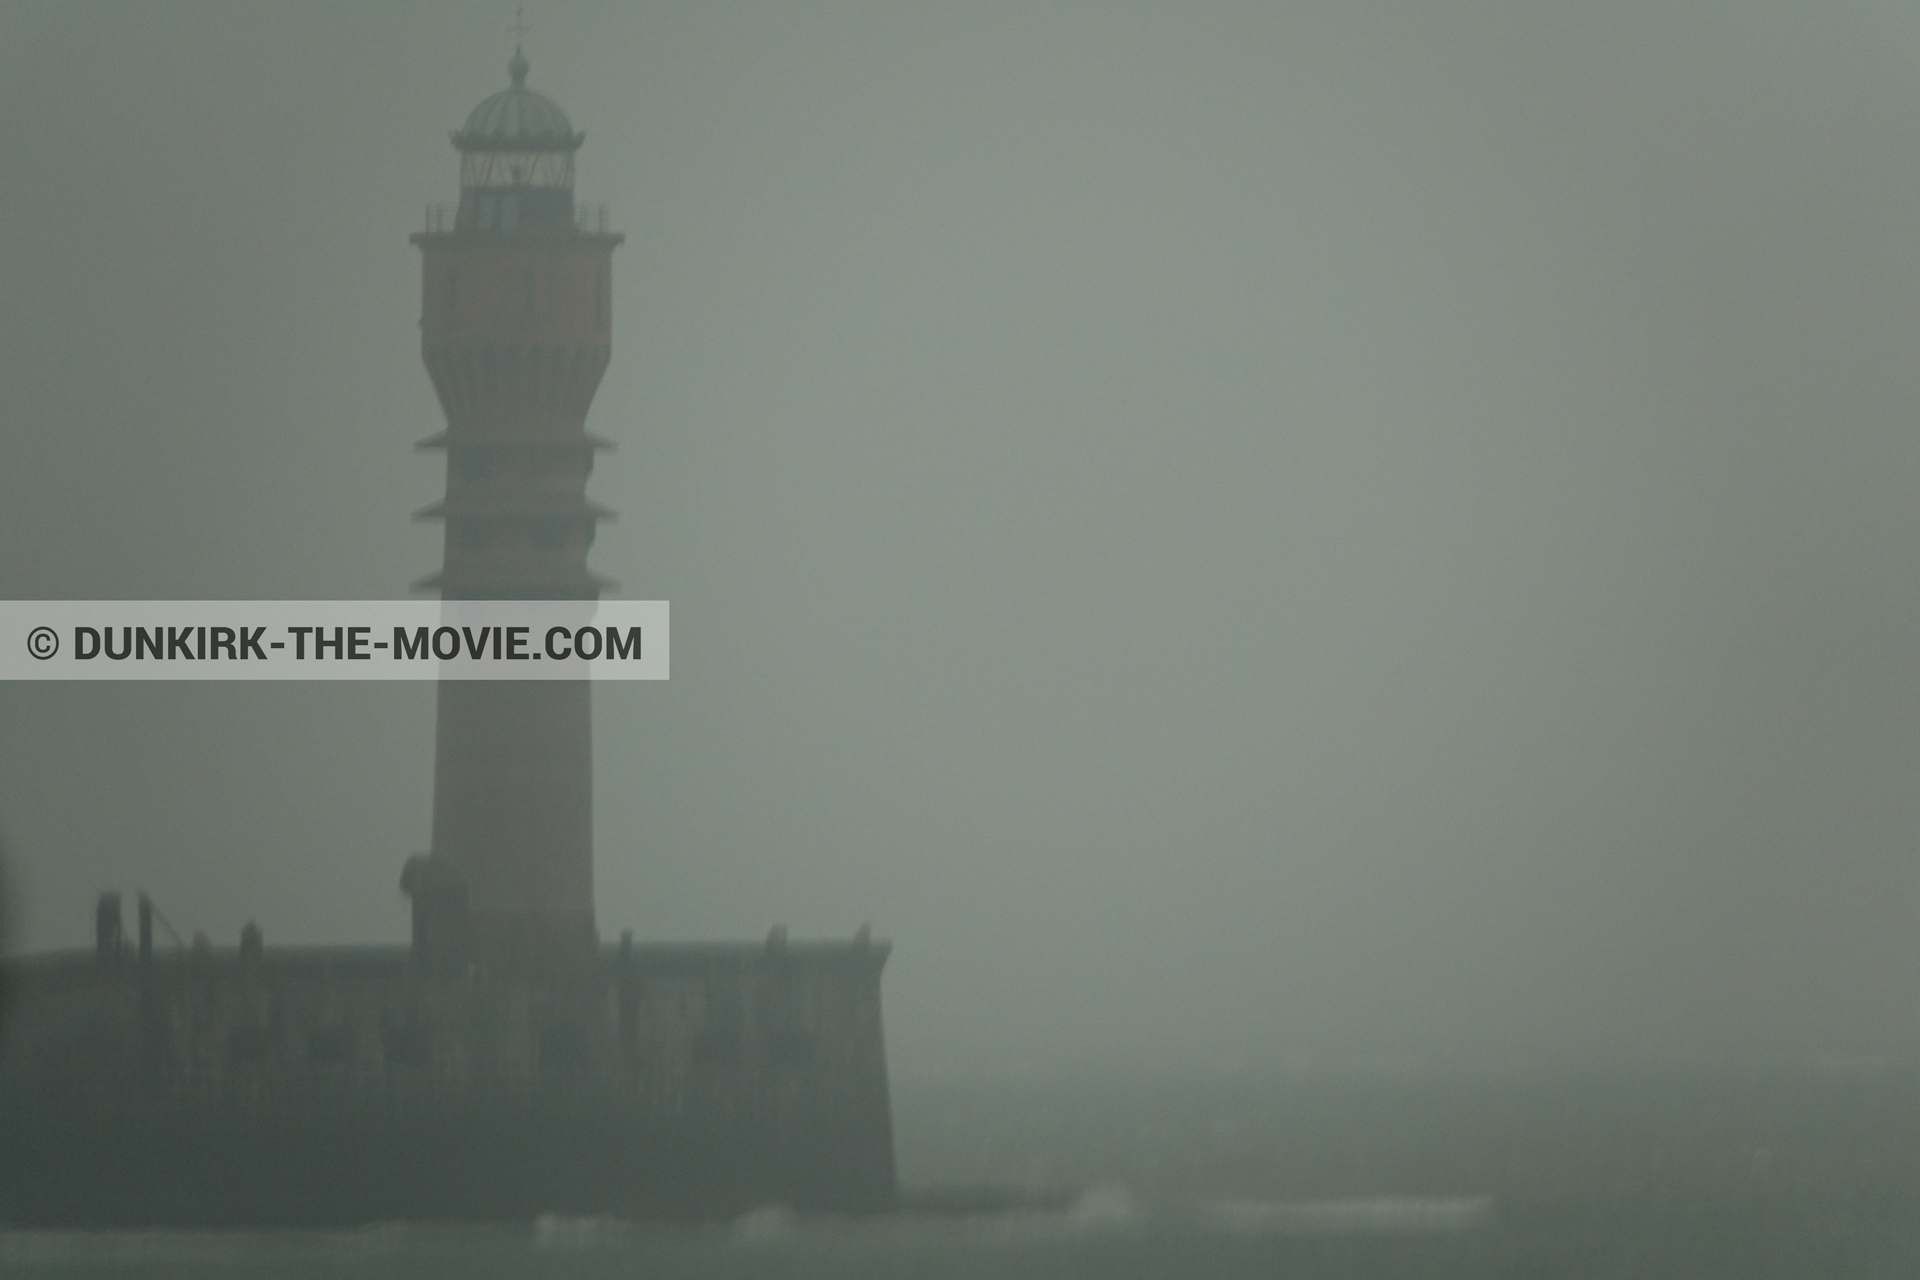 Fotos con cielo gris, faro de Saint-Pol-sur-Mer,  durante el rodaje de la película Dunkerque de Nolan